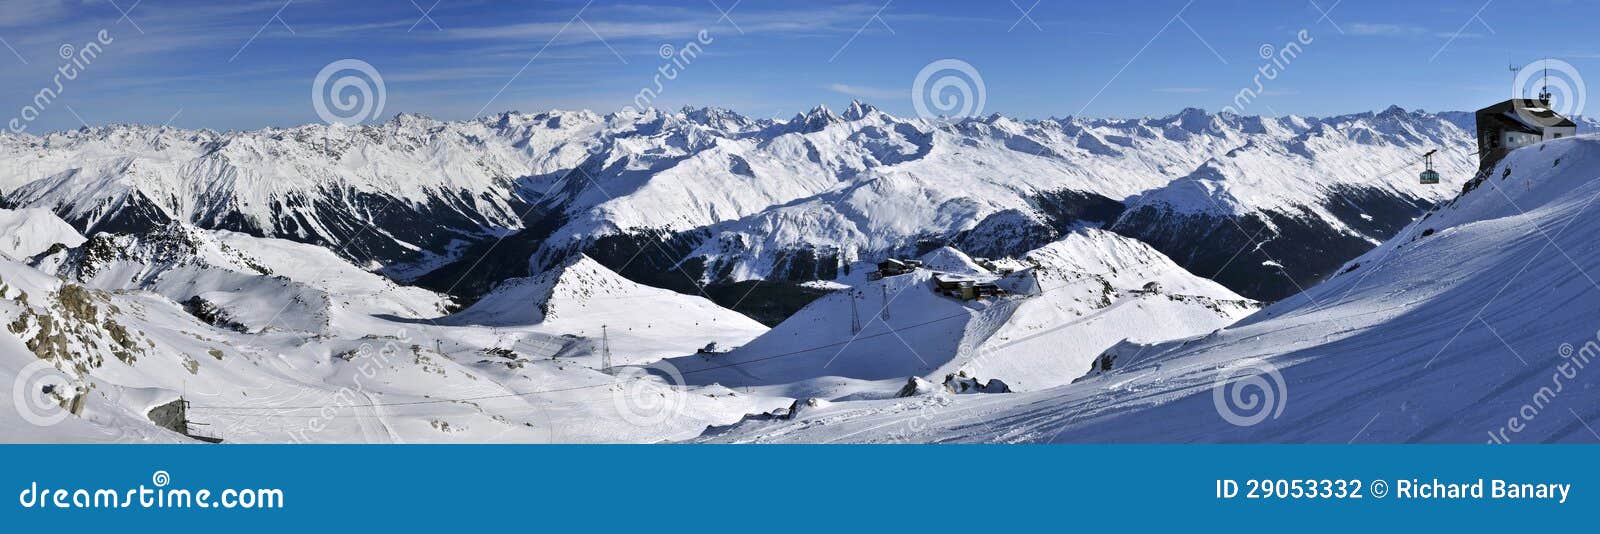 davos ski resort